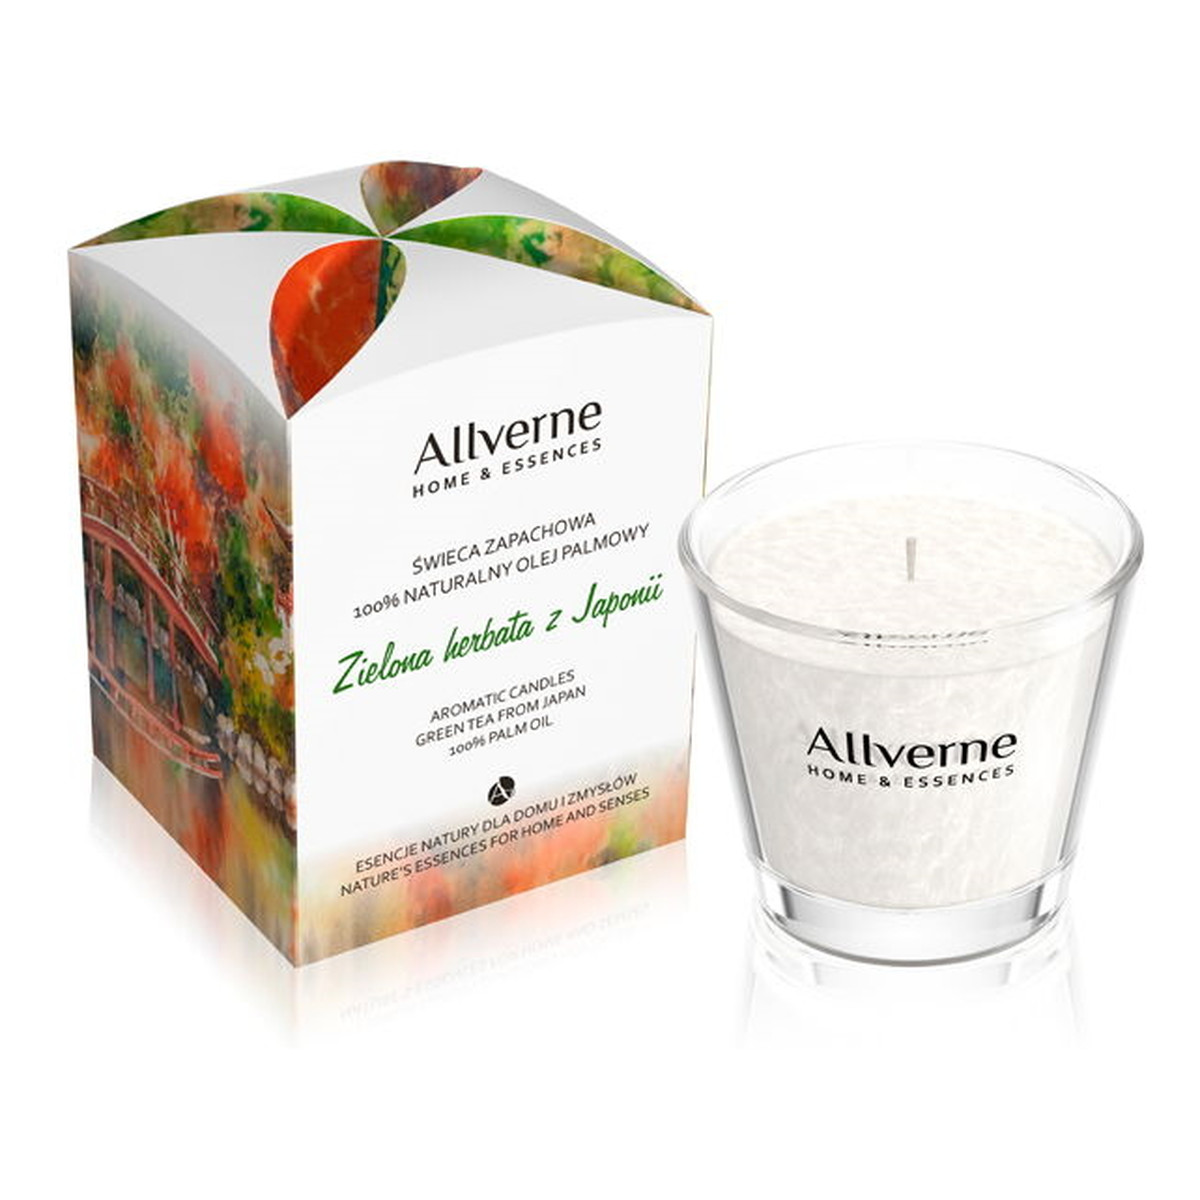 Allvernum Home & Essences Świeca zapachowa Zielona Herbata z Japonii 170g